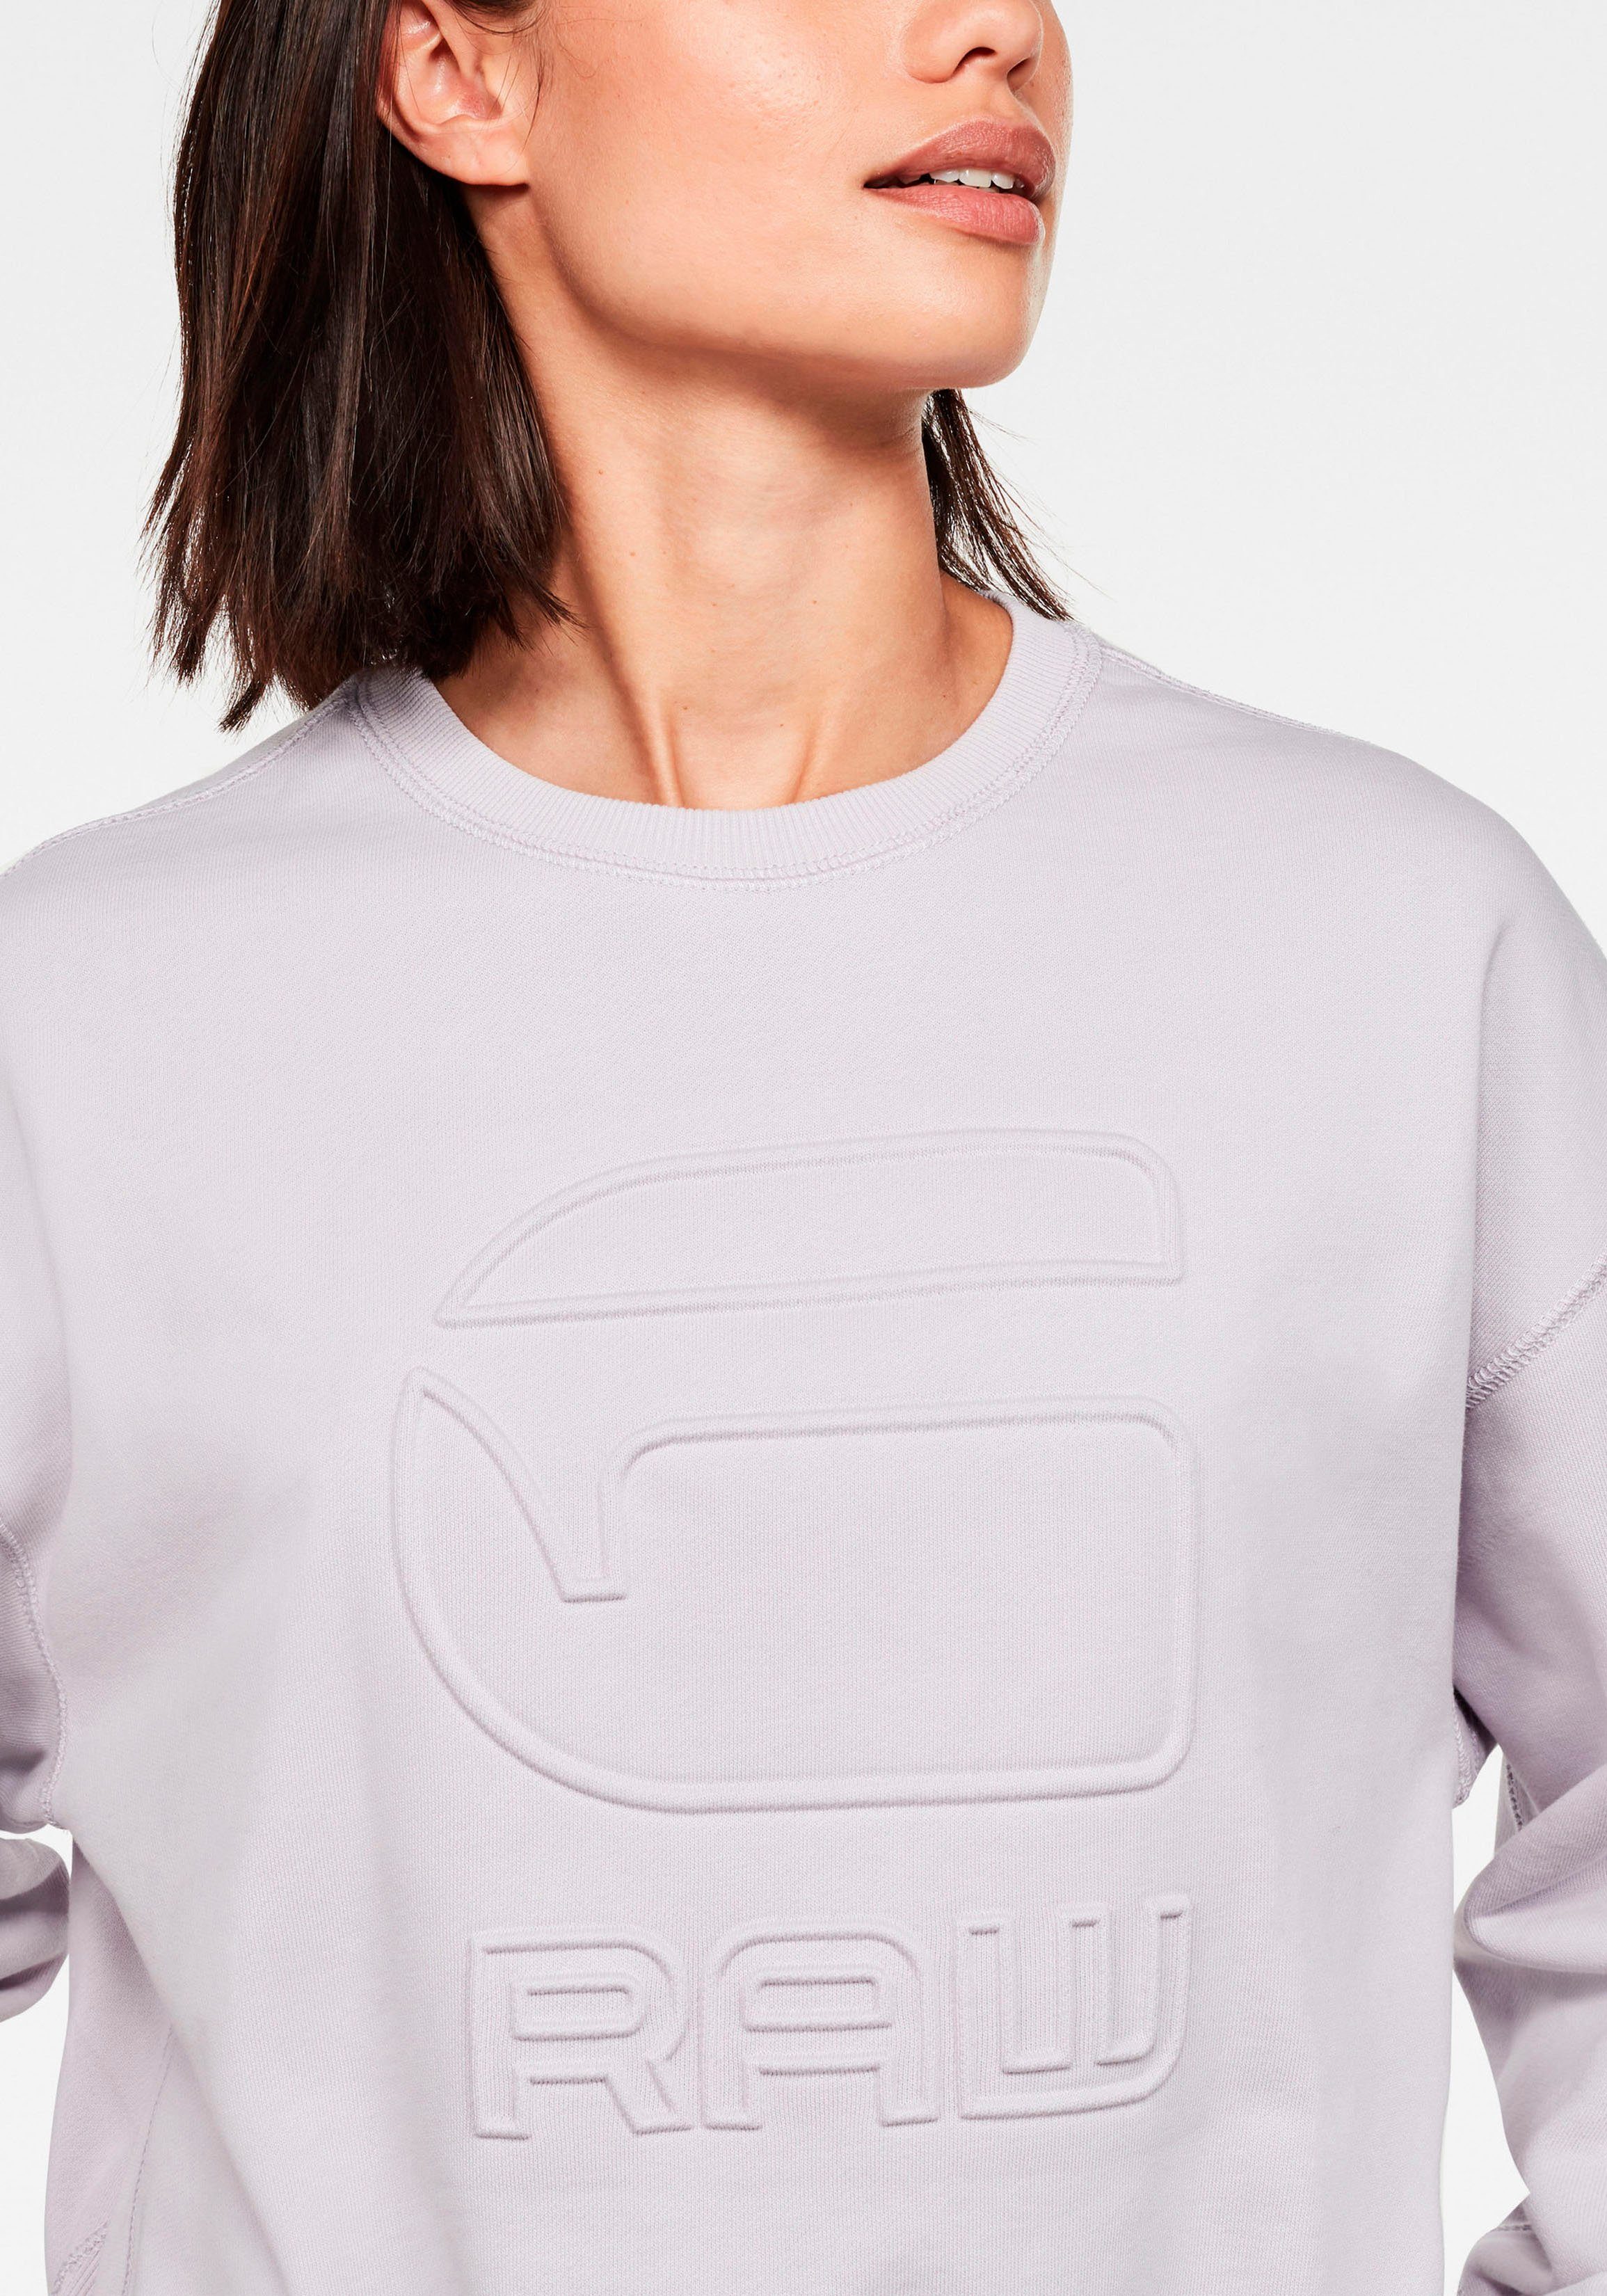 Damen Pullover G-Star RAW Sweatshirt Loose Sweatshirt mit geprägten G-Star RAW Logo vorne